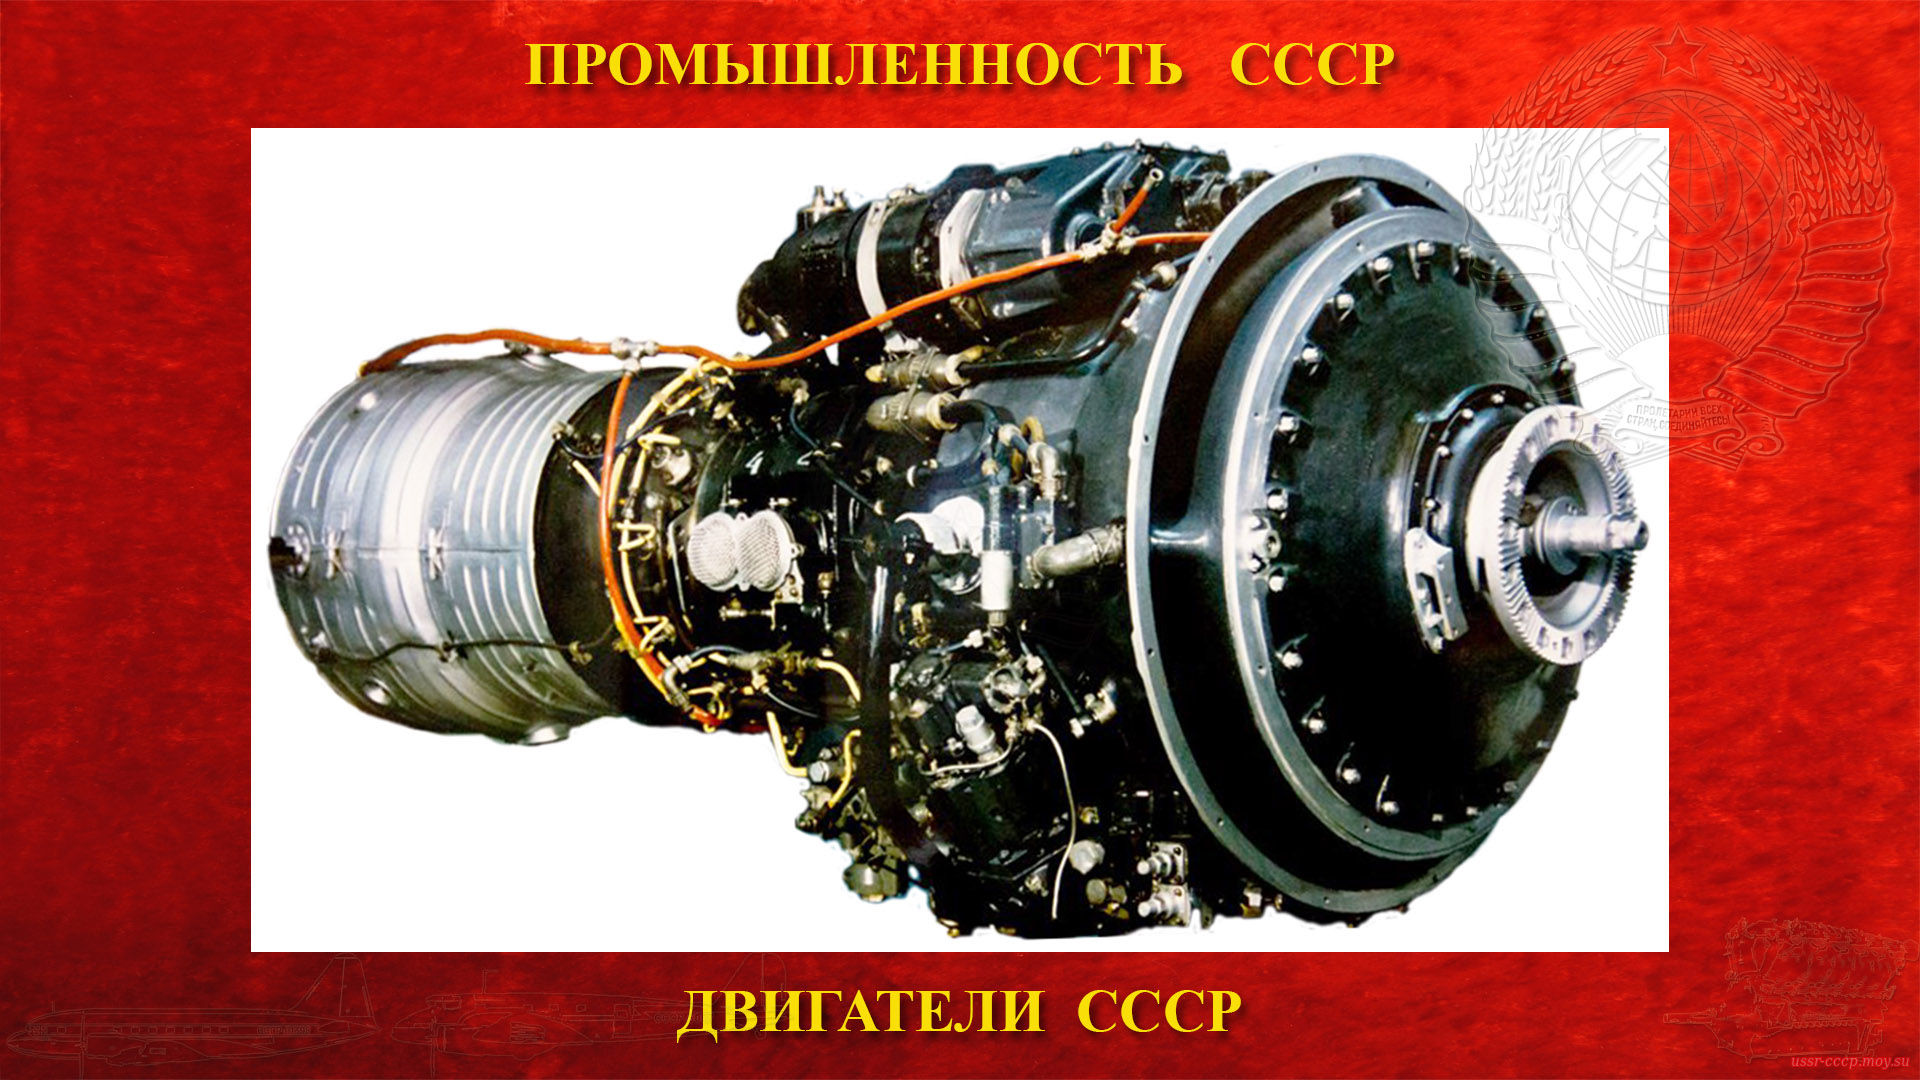 НК-4 — Советский авиационный турбовинтовой двигатель СССР (повествование)